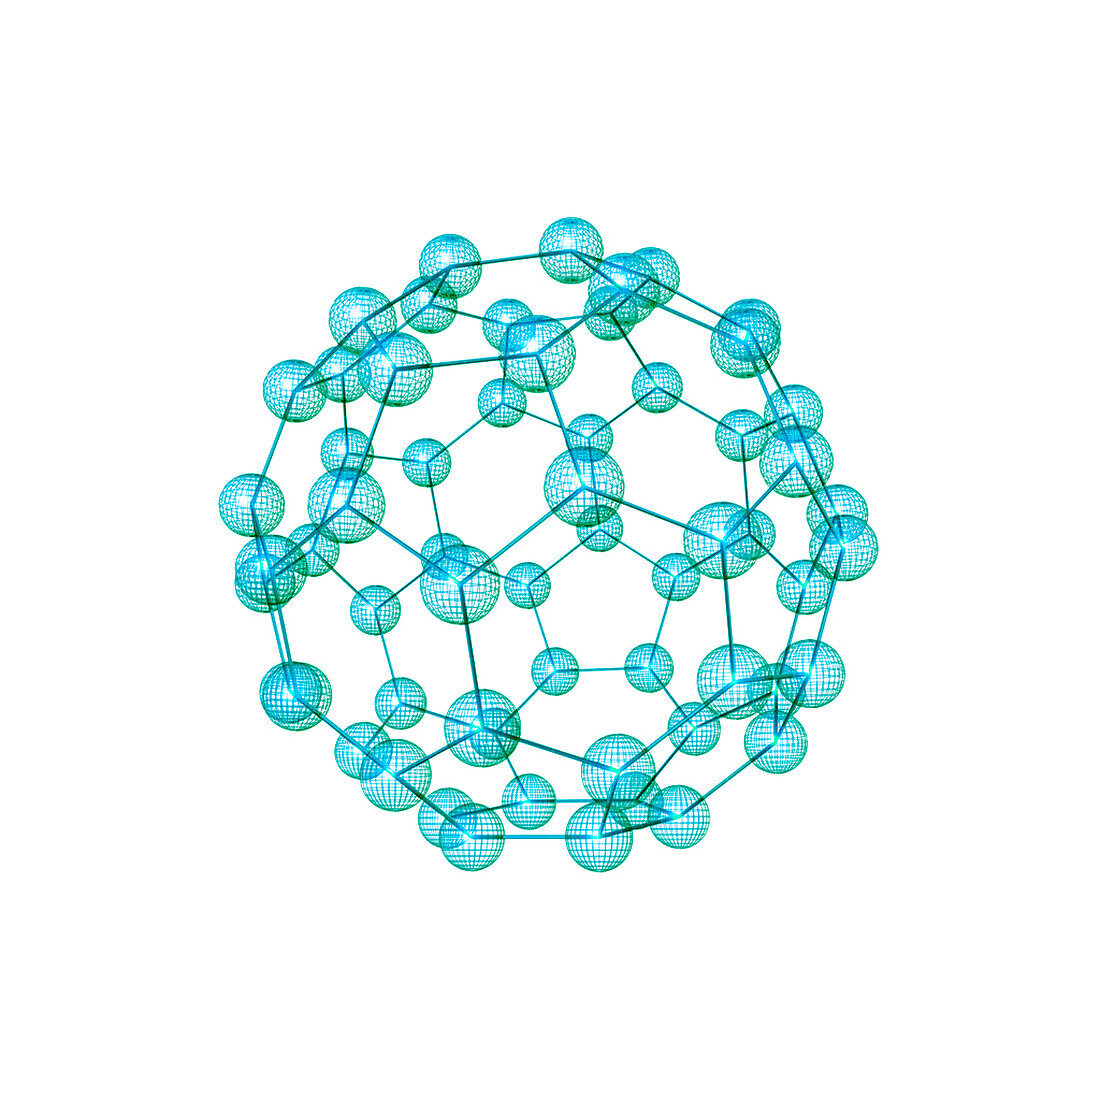 Buckminsterfullerene, illustration